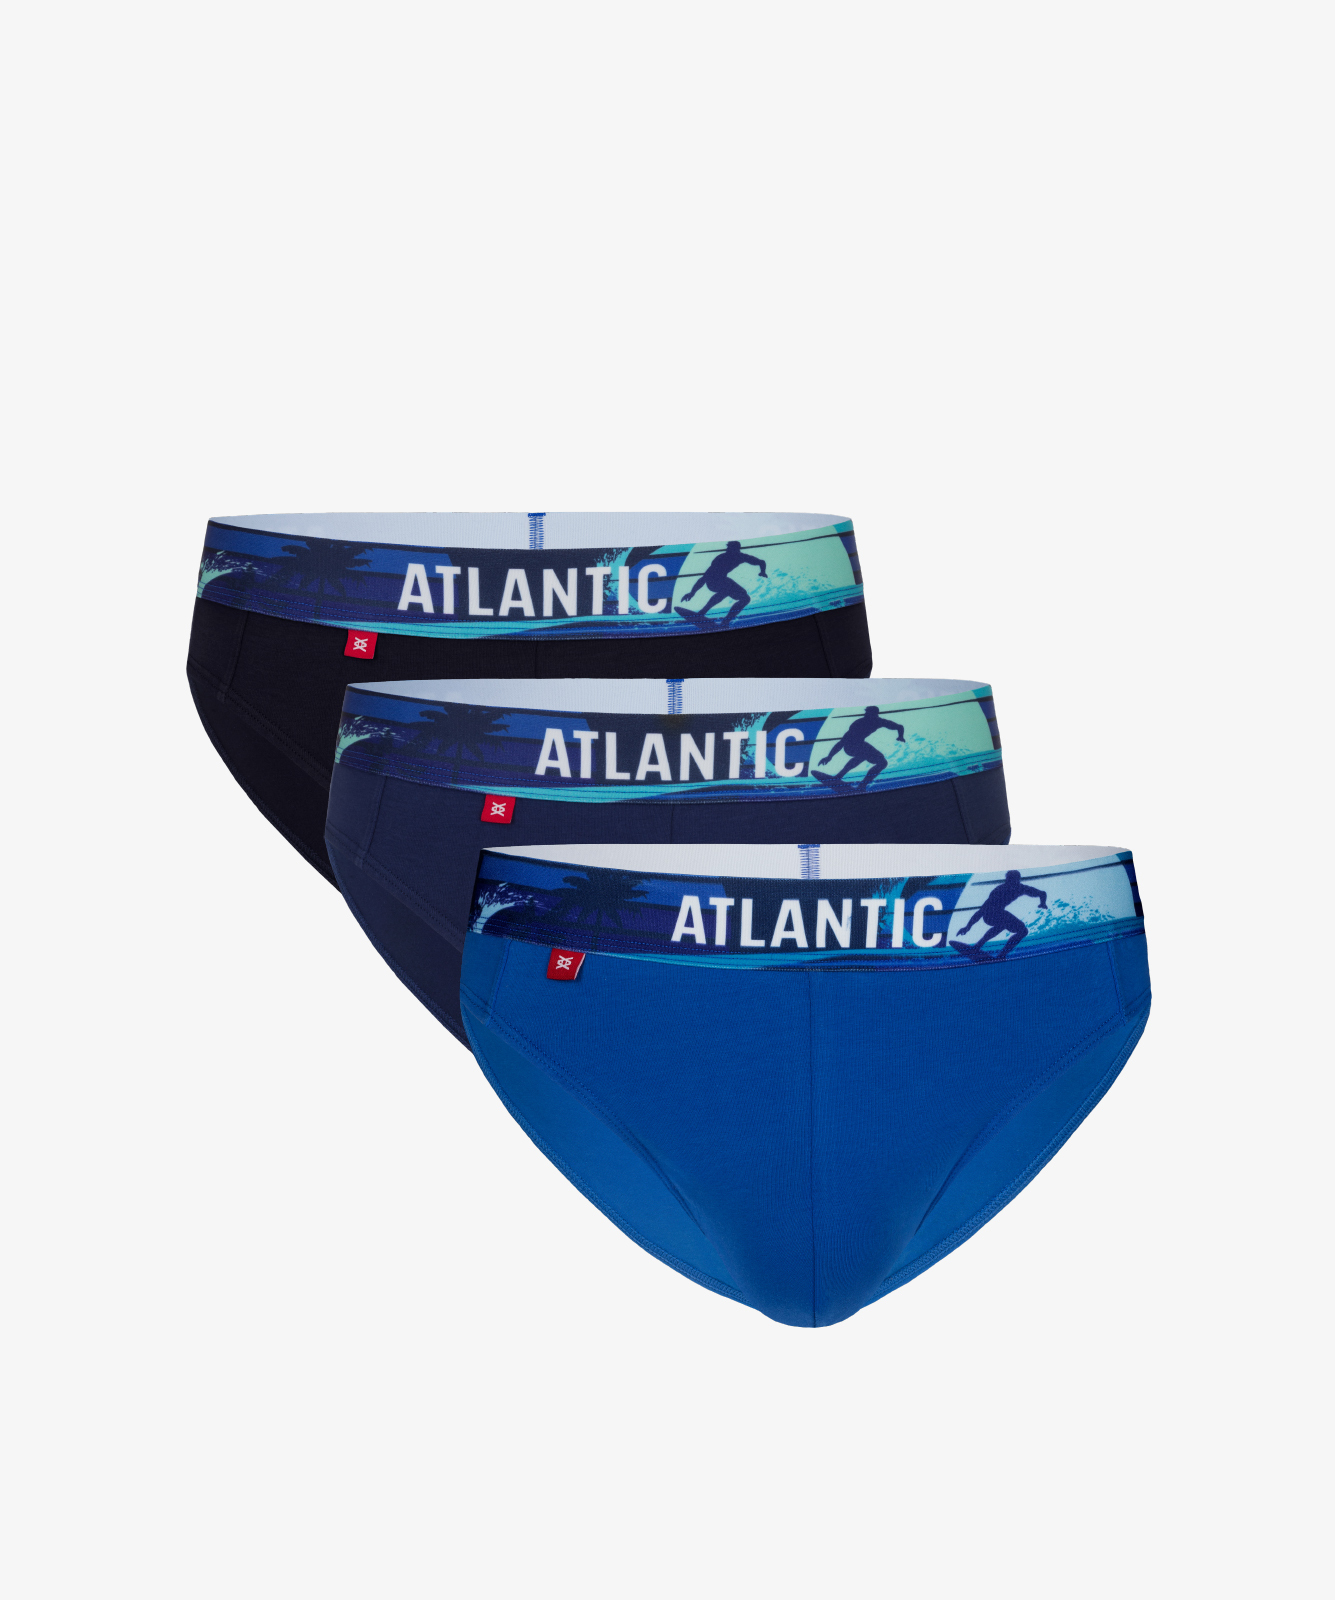 Мужские трусы слипы спорт Atlantic, набор 3 шт., хлопок, темно-синие + темно-голубые + голубые, 3MP-144